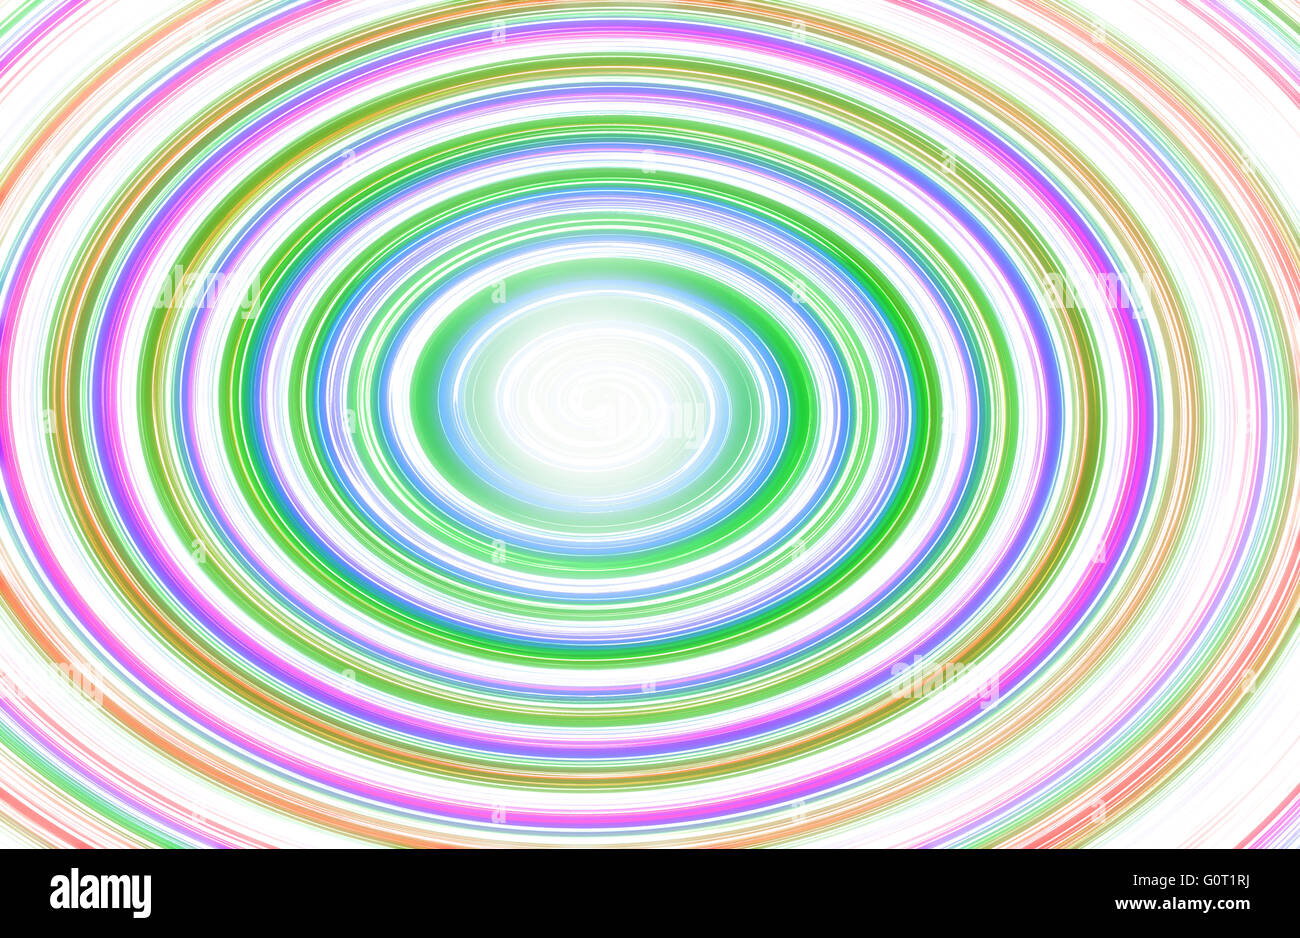 Résumé fond multicolore avec cercle en spirale Banque D'Images